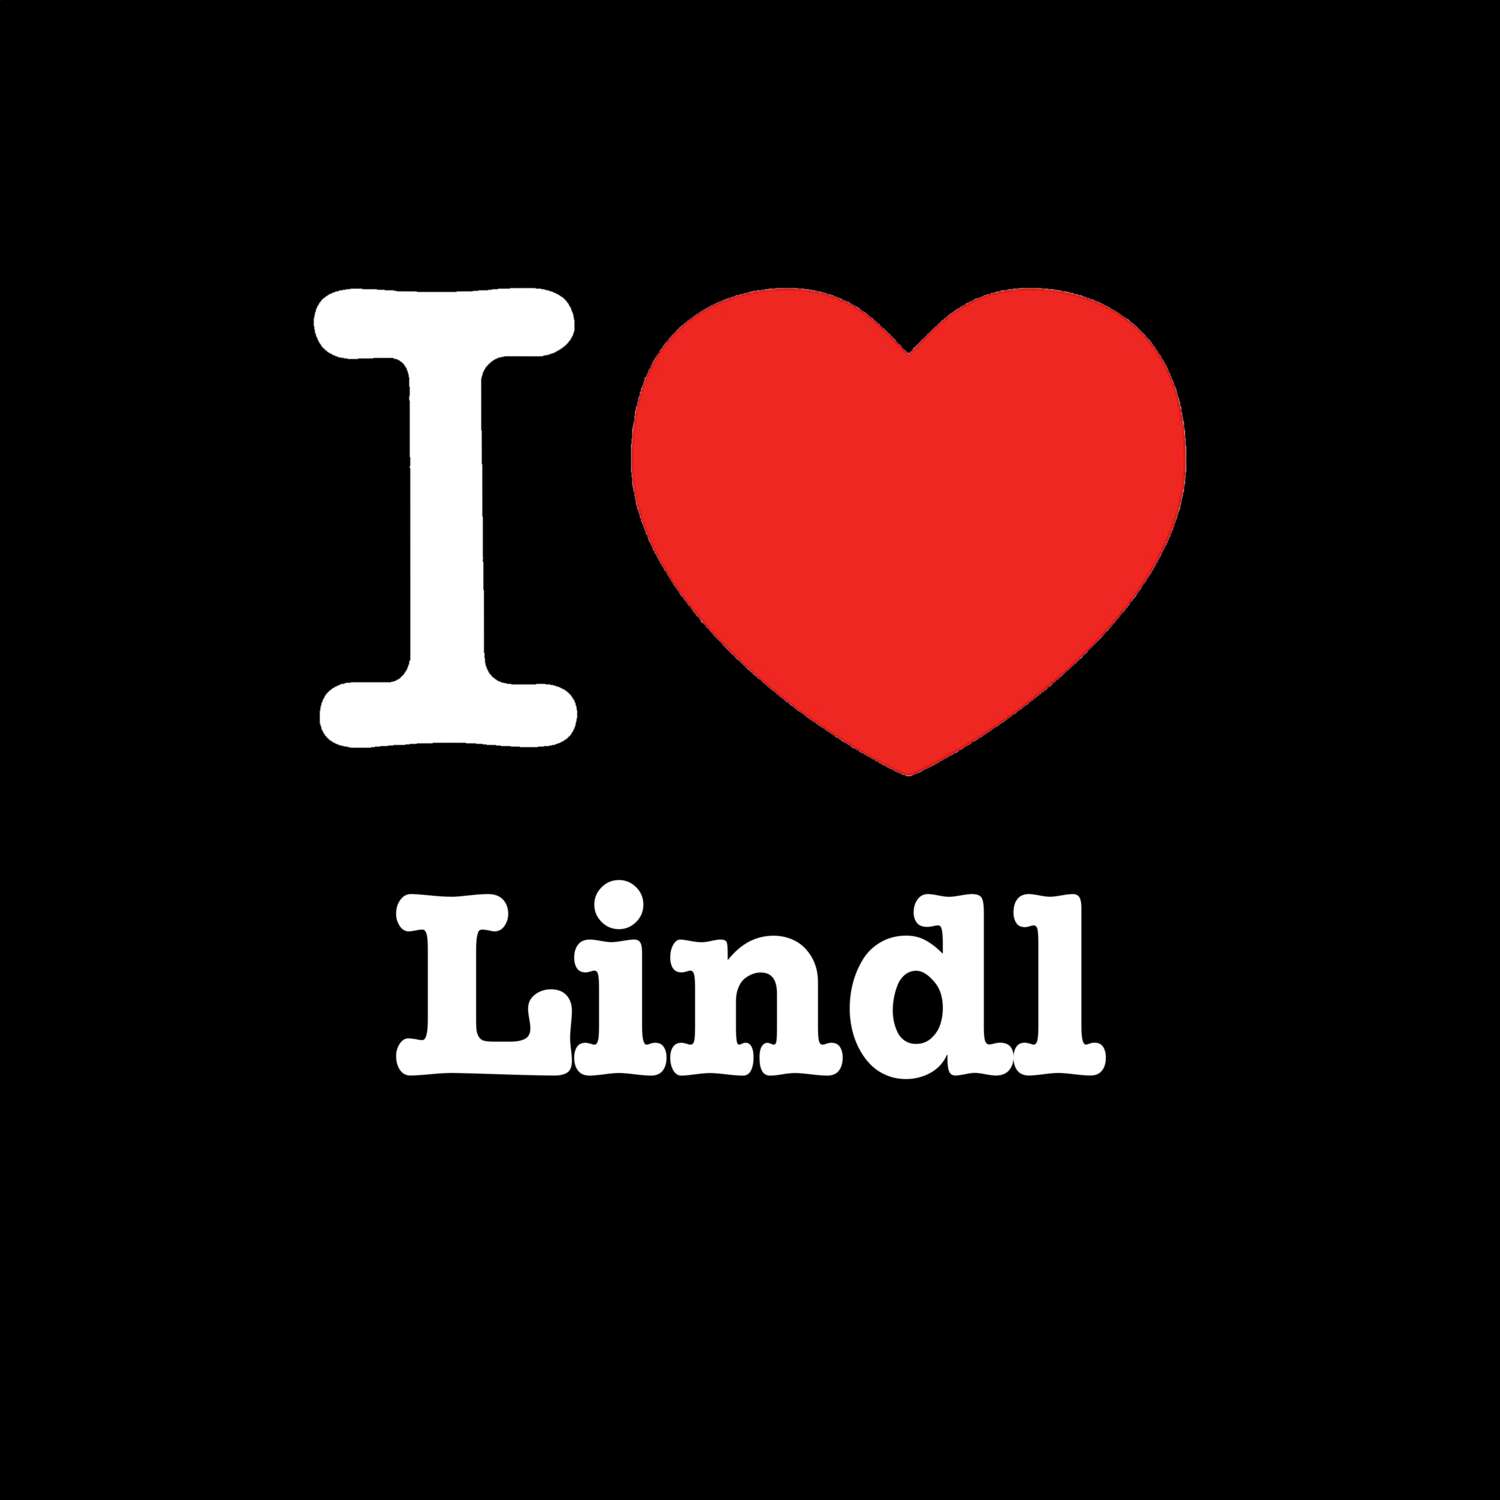 Lindl T-Shirt »I love«